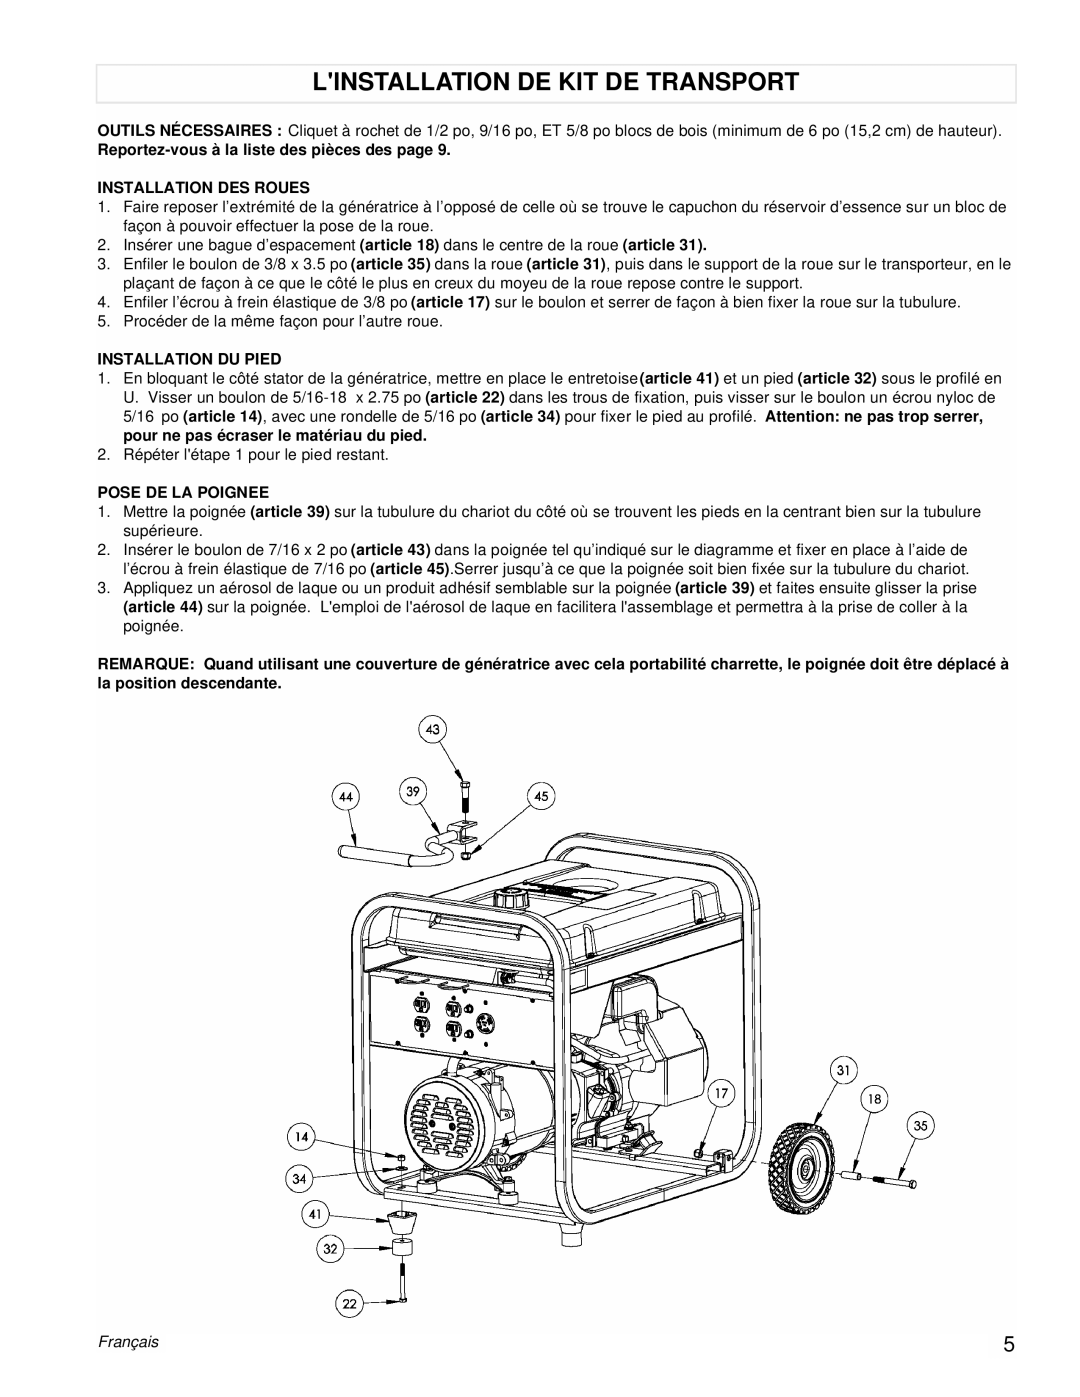 Powermate PM0525312.03 Linstallation De Kit De Transport, Reportez-vousà la liste des pièces des page, Pose De La Poignee 